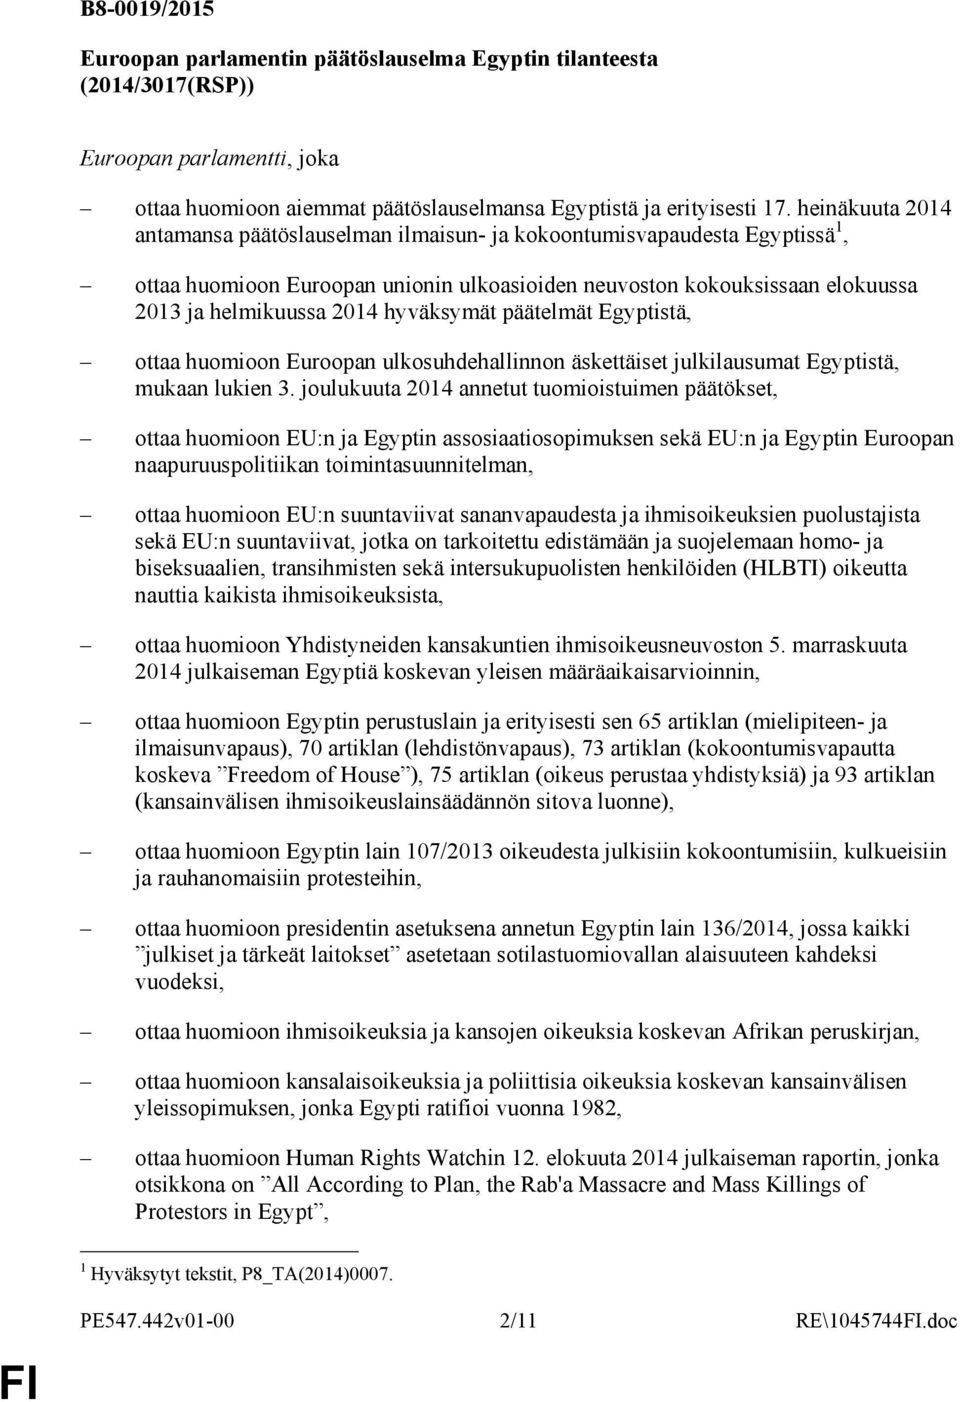 hyväksymät päätelmät Egyptistä, ottaa huomioon Euroopan ulkosuhdehallinnon äskettäiset julkilausumat Egyptistä, mukaan lukien 3.